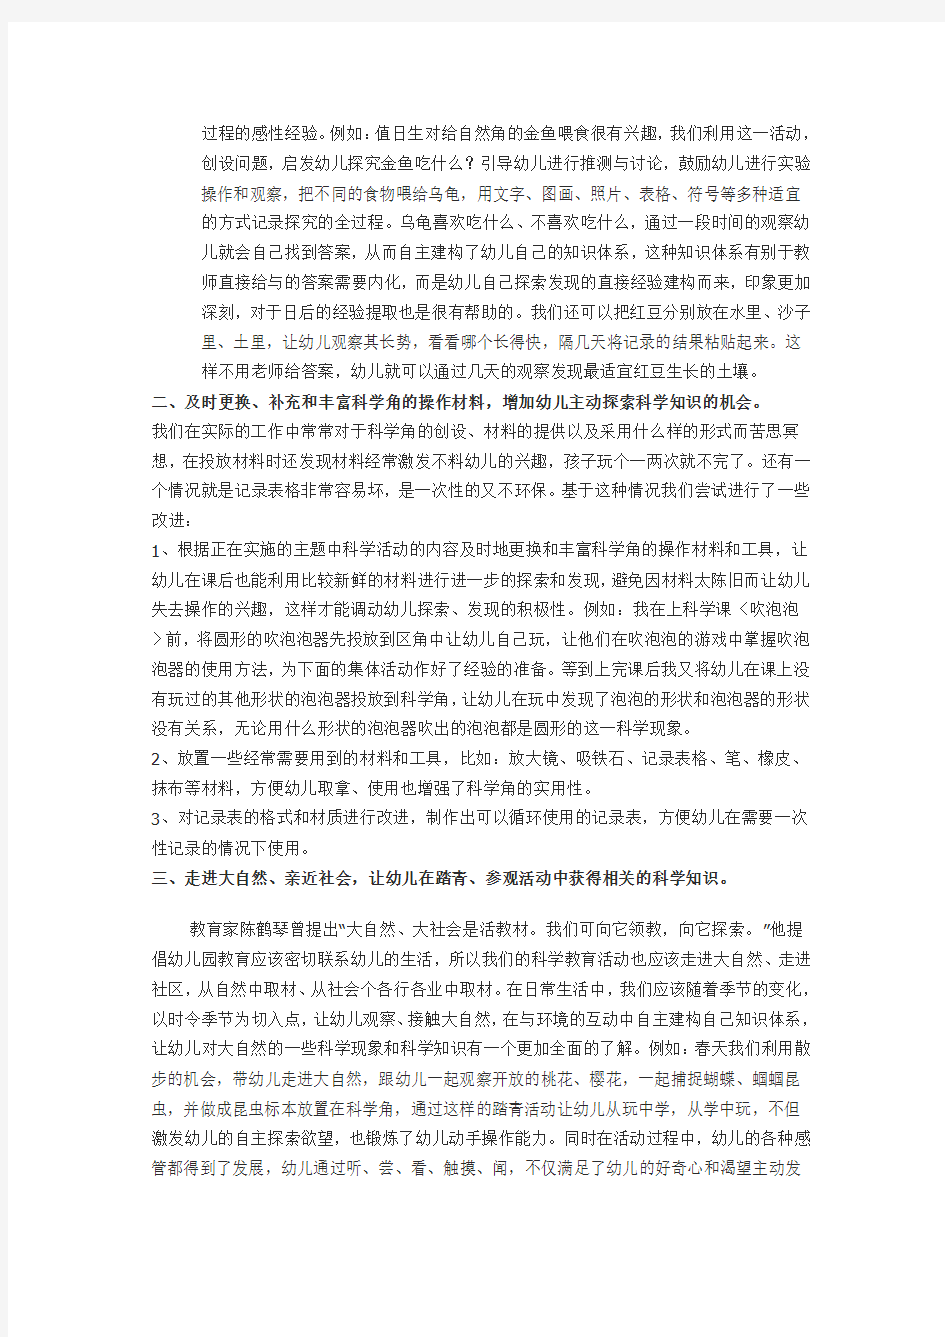 南京市下关区热河南路幼儿园参评论文《科学教育活动渗透于幼儿日常生活中的探索》